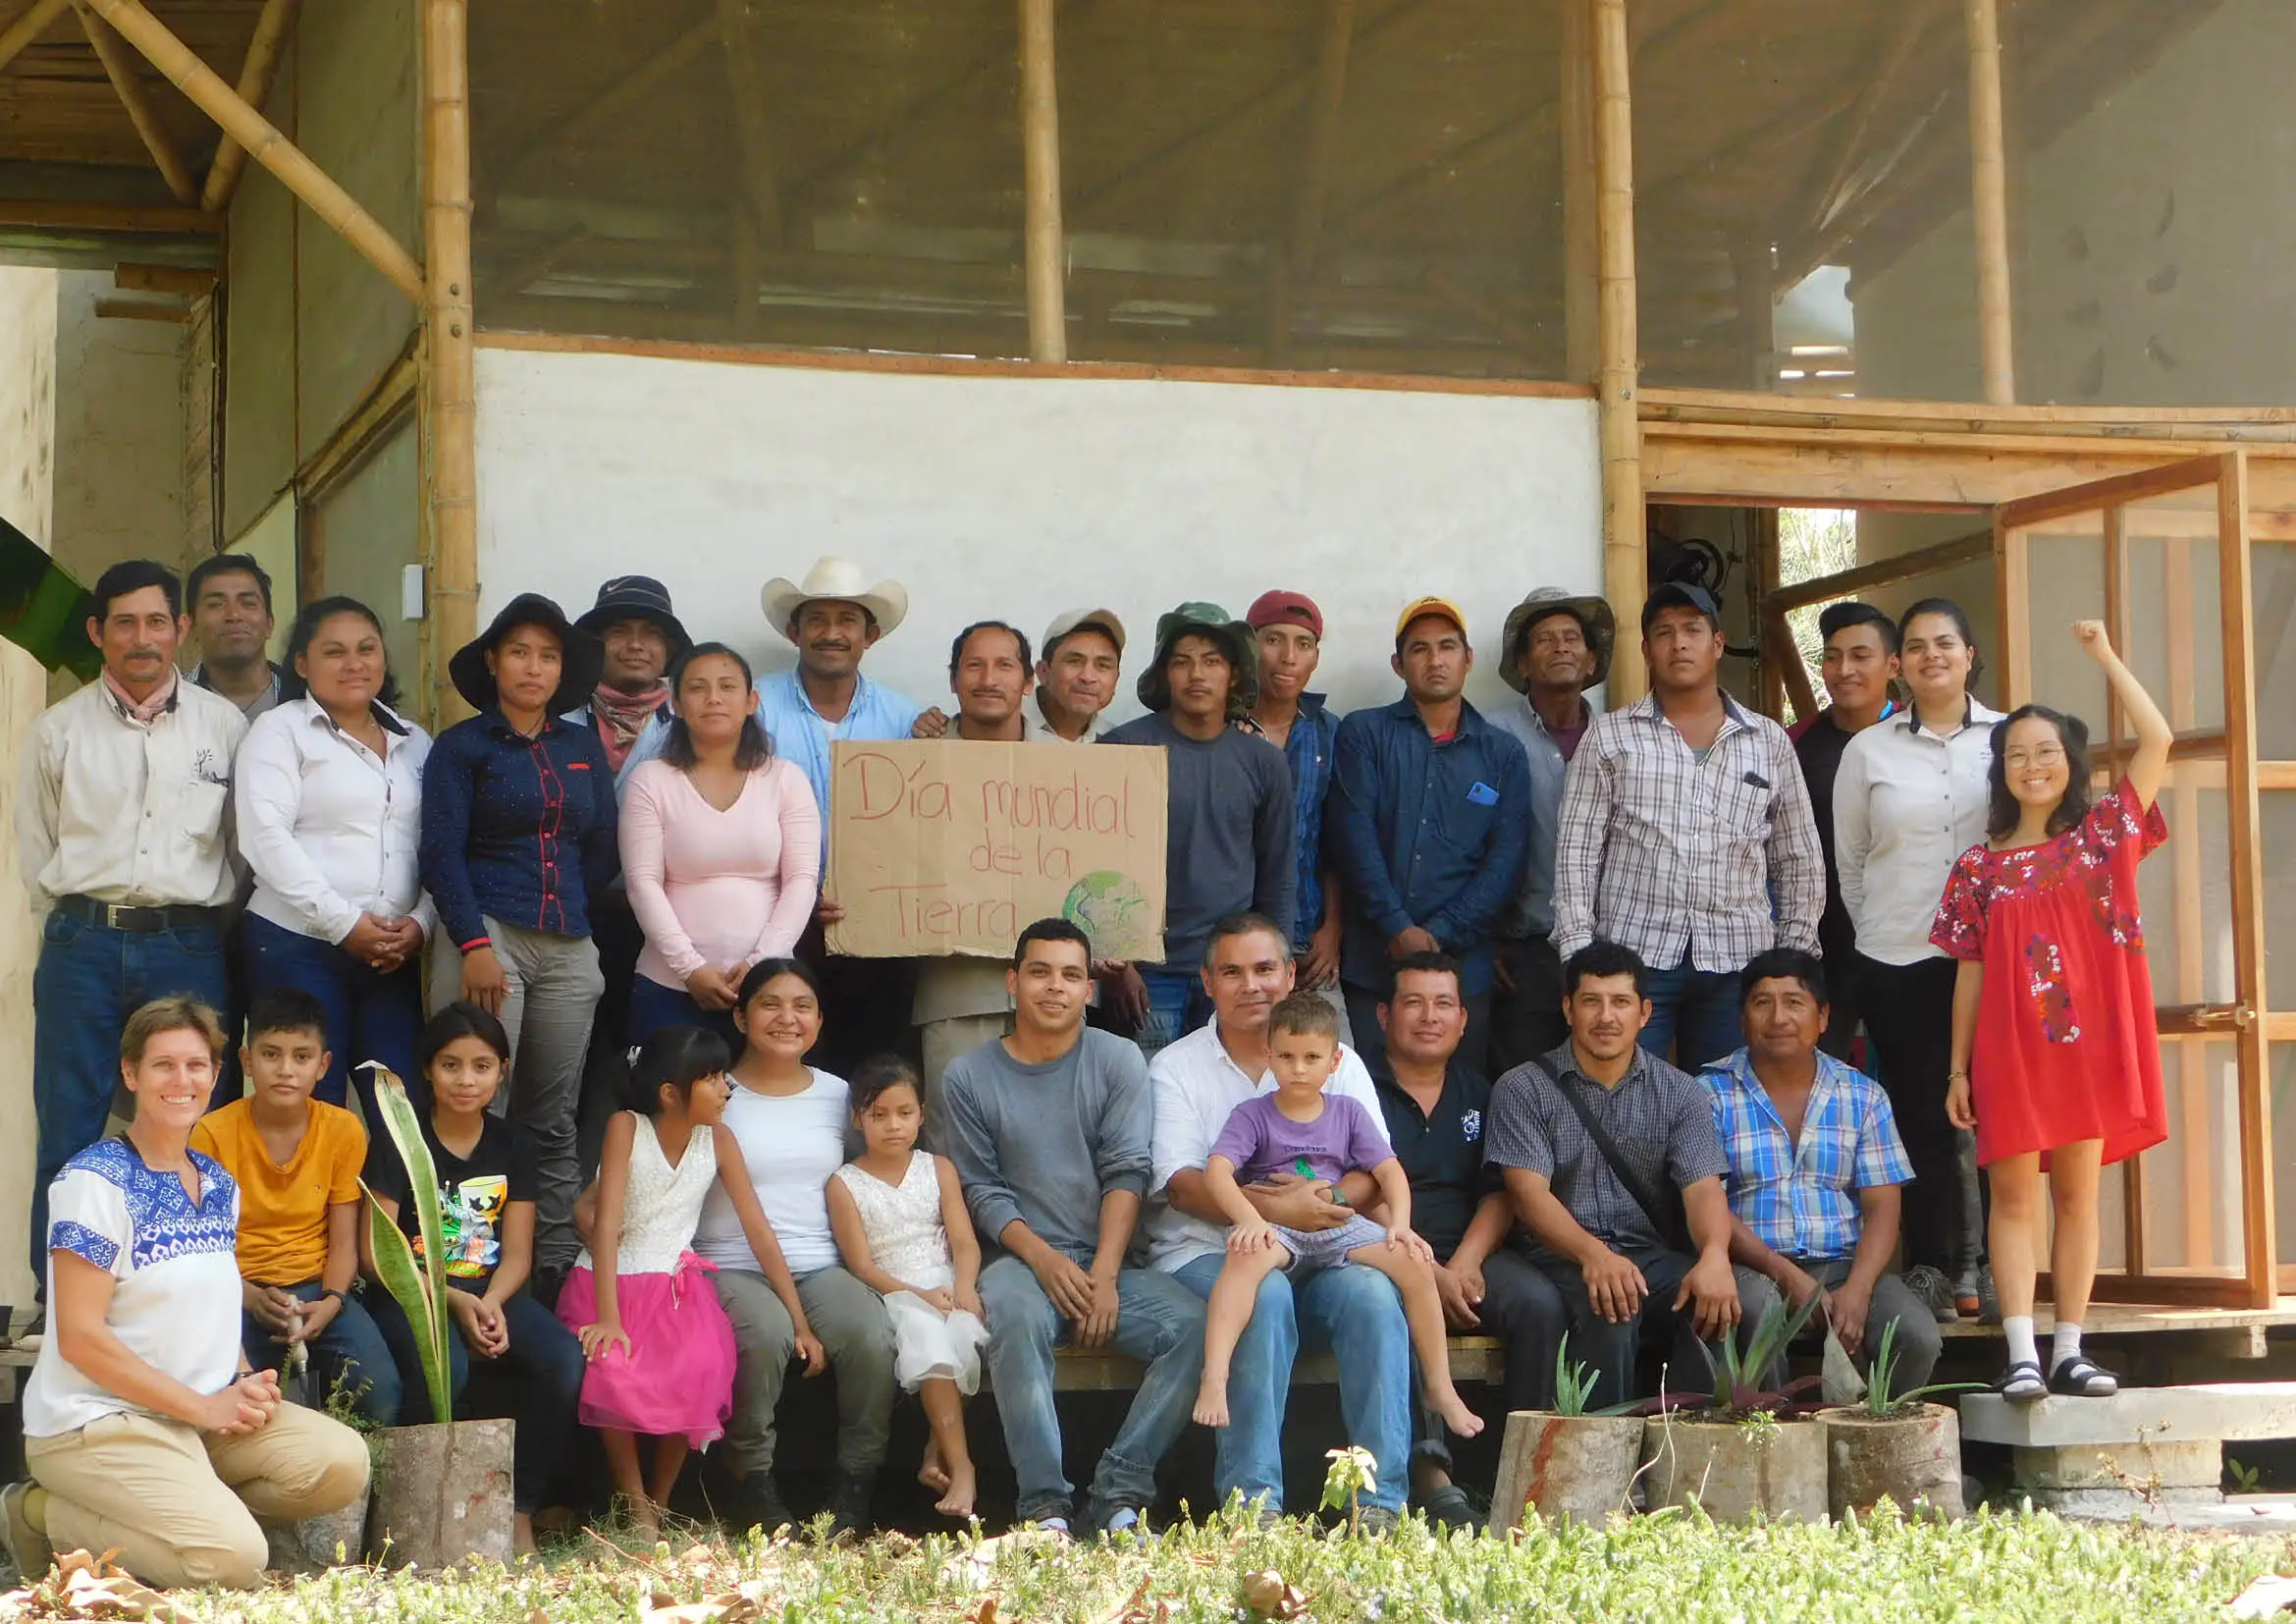 Les communautés locale intégrées au projet de restauration d'écosystèmes au Mexique